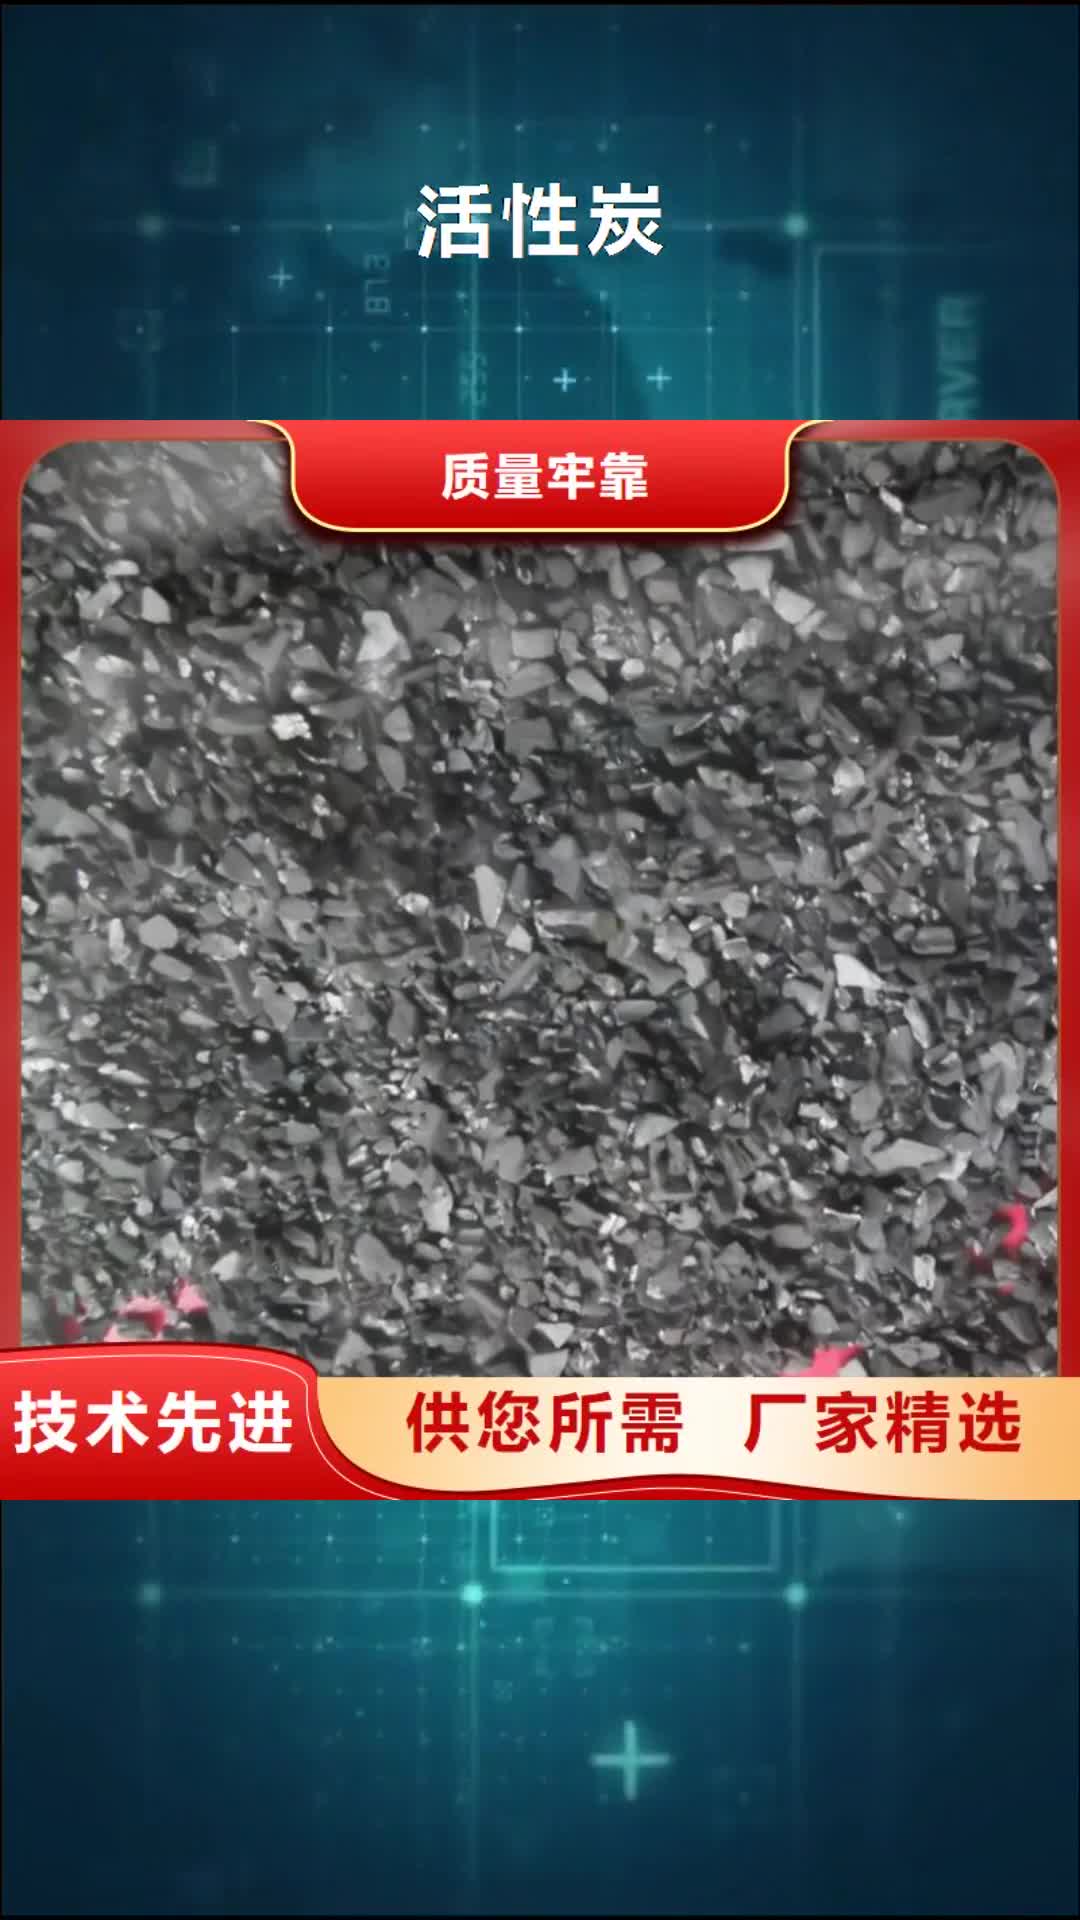 梅州【活性炭】_果壳活性炭严格把控质量